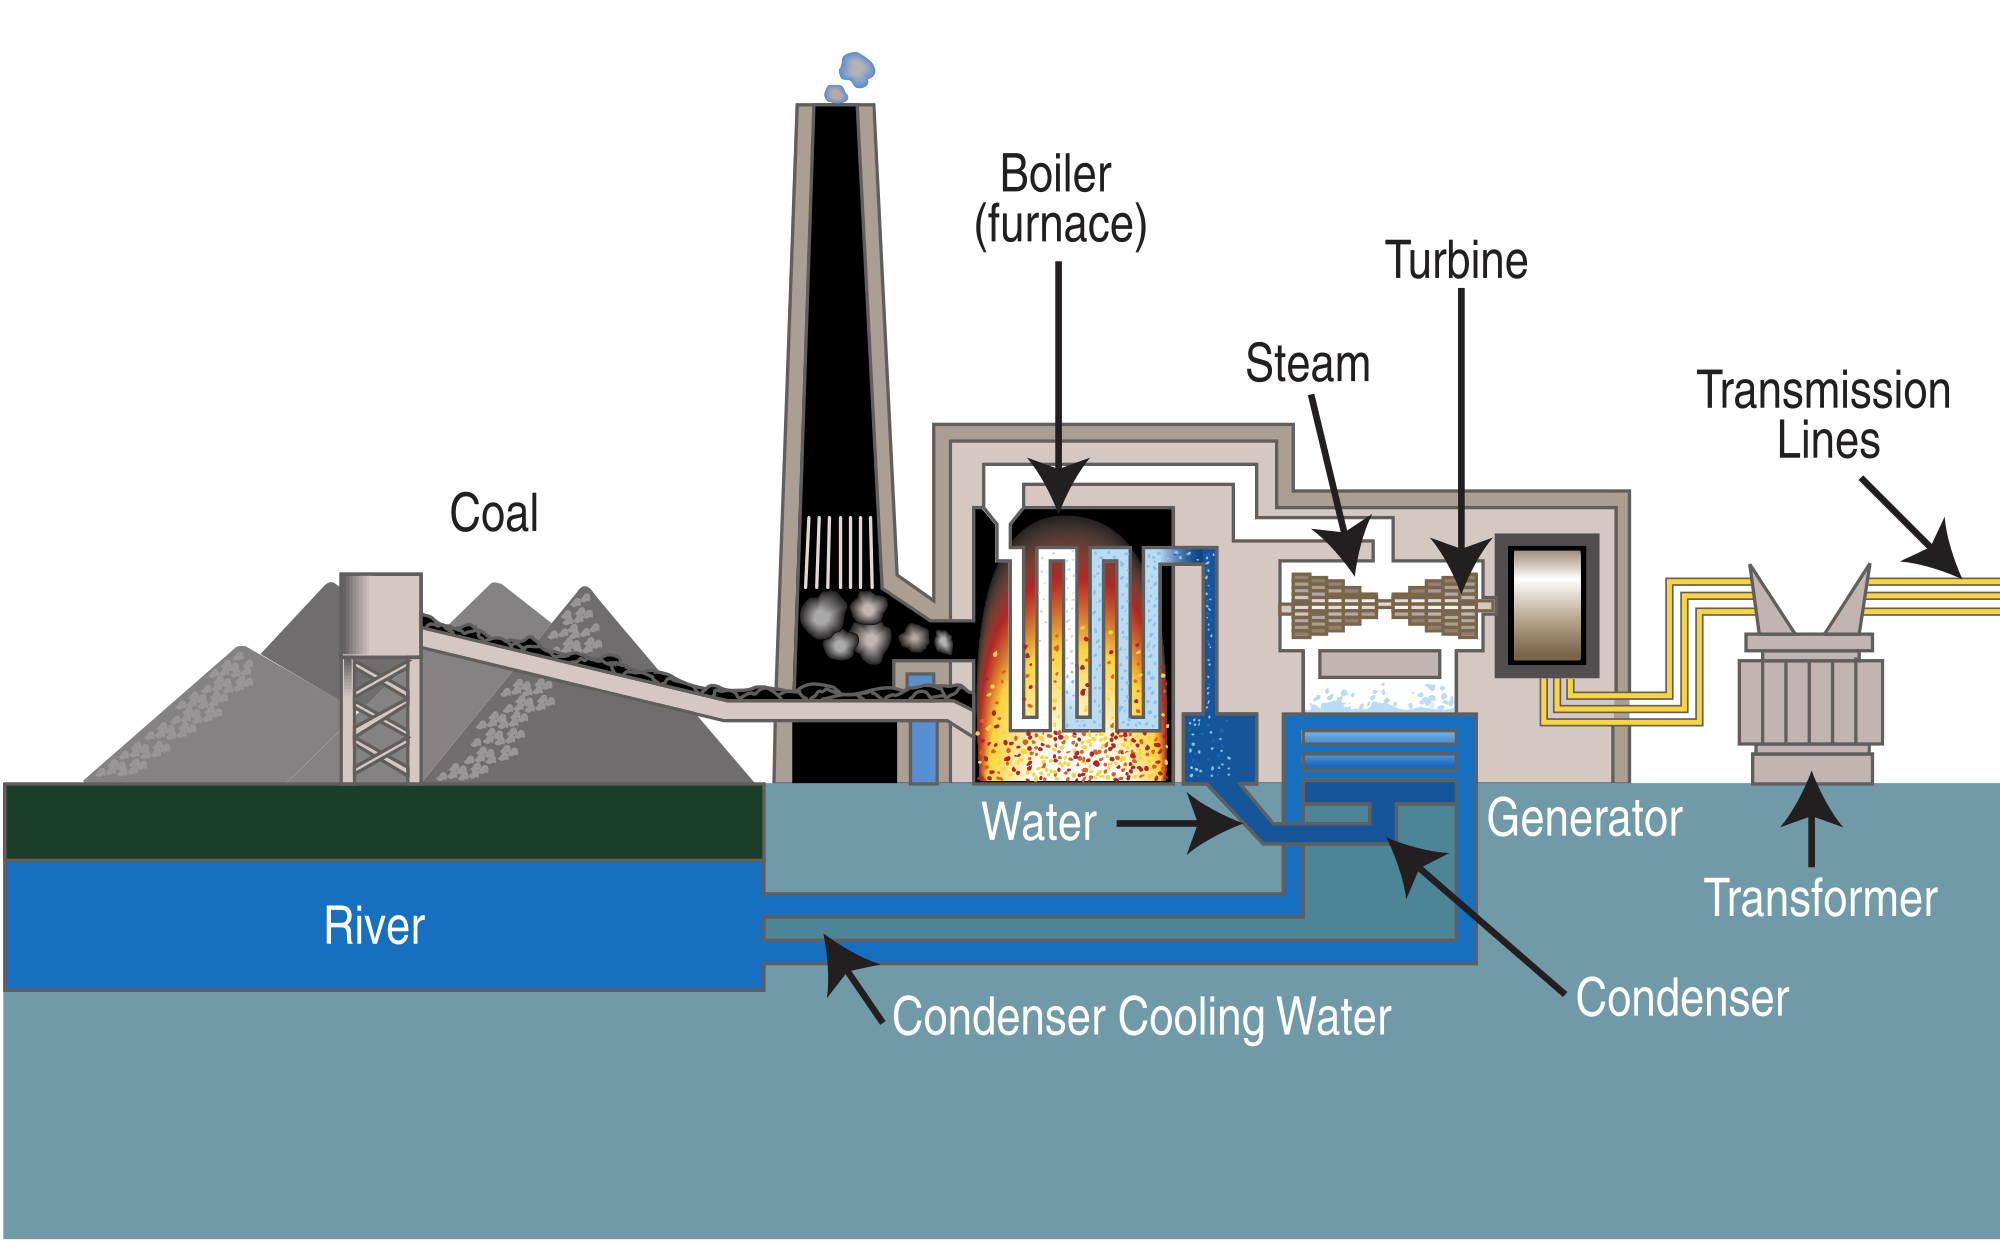 steam turbine generator diagram